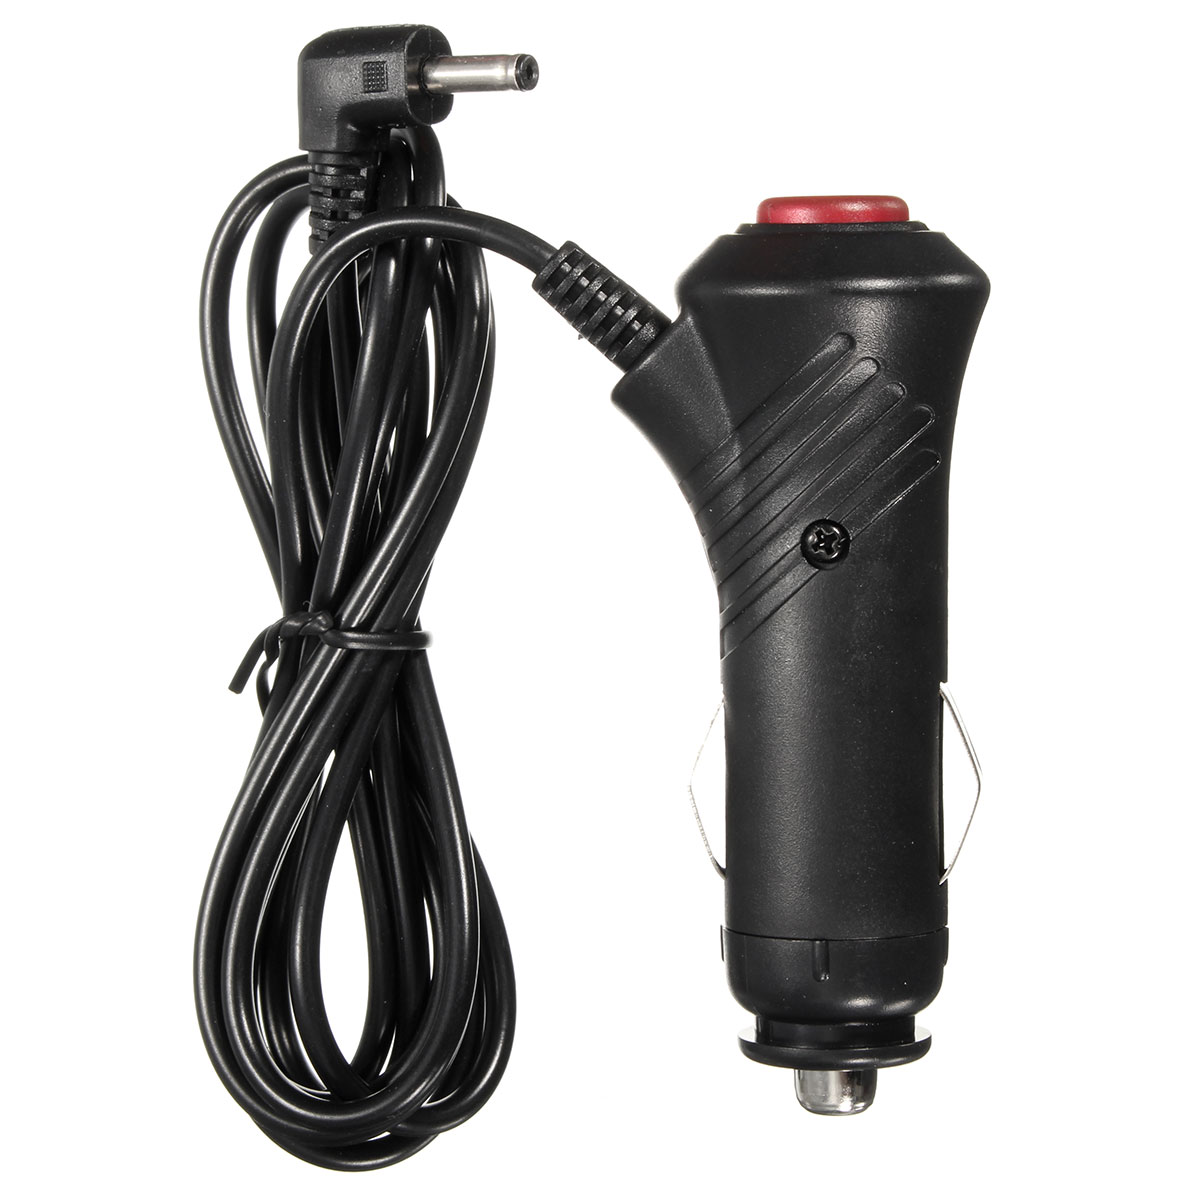 KROAK 12 V Auto Adapter Oplader Sigarettenaansteker Stekker Cord GPS Kabel w/Schakelaar Voor Auto GPS Navigatie DVR Camera